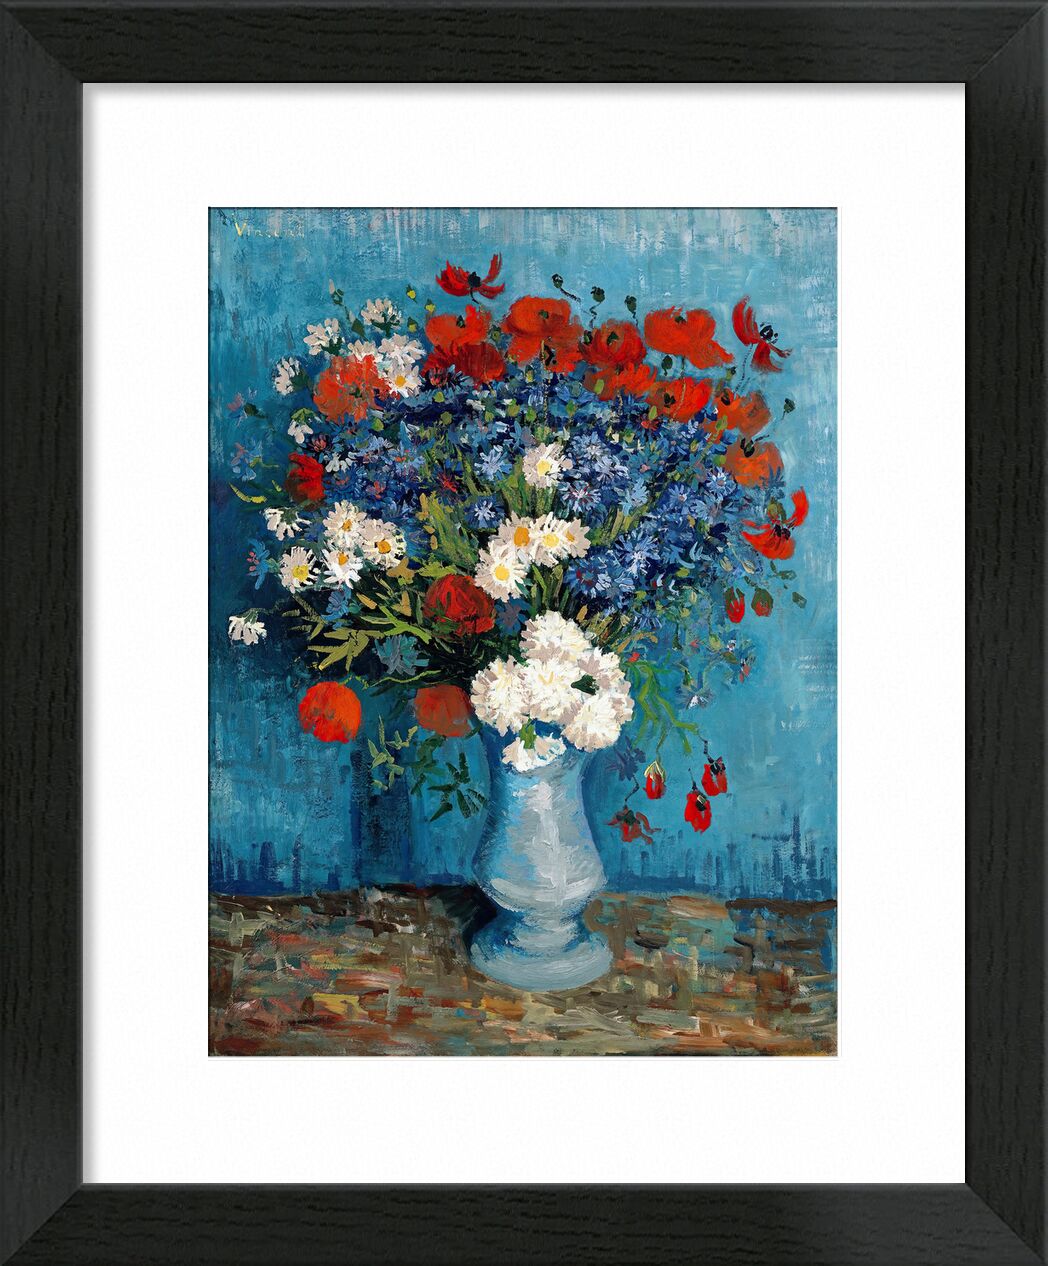 Still Life: Vase with Cornflowers and Poppies - Van Gogh von Bildende Kunst, Prodi Art, Van gogh, Stillleben, Malerei, Mohnblumen, Blaubeeren